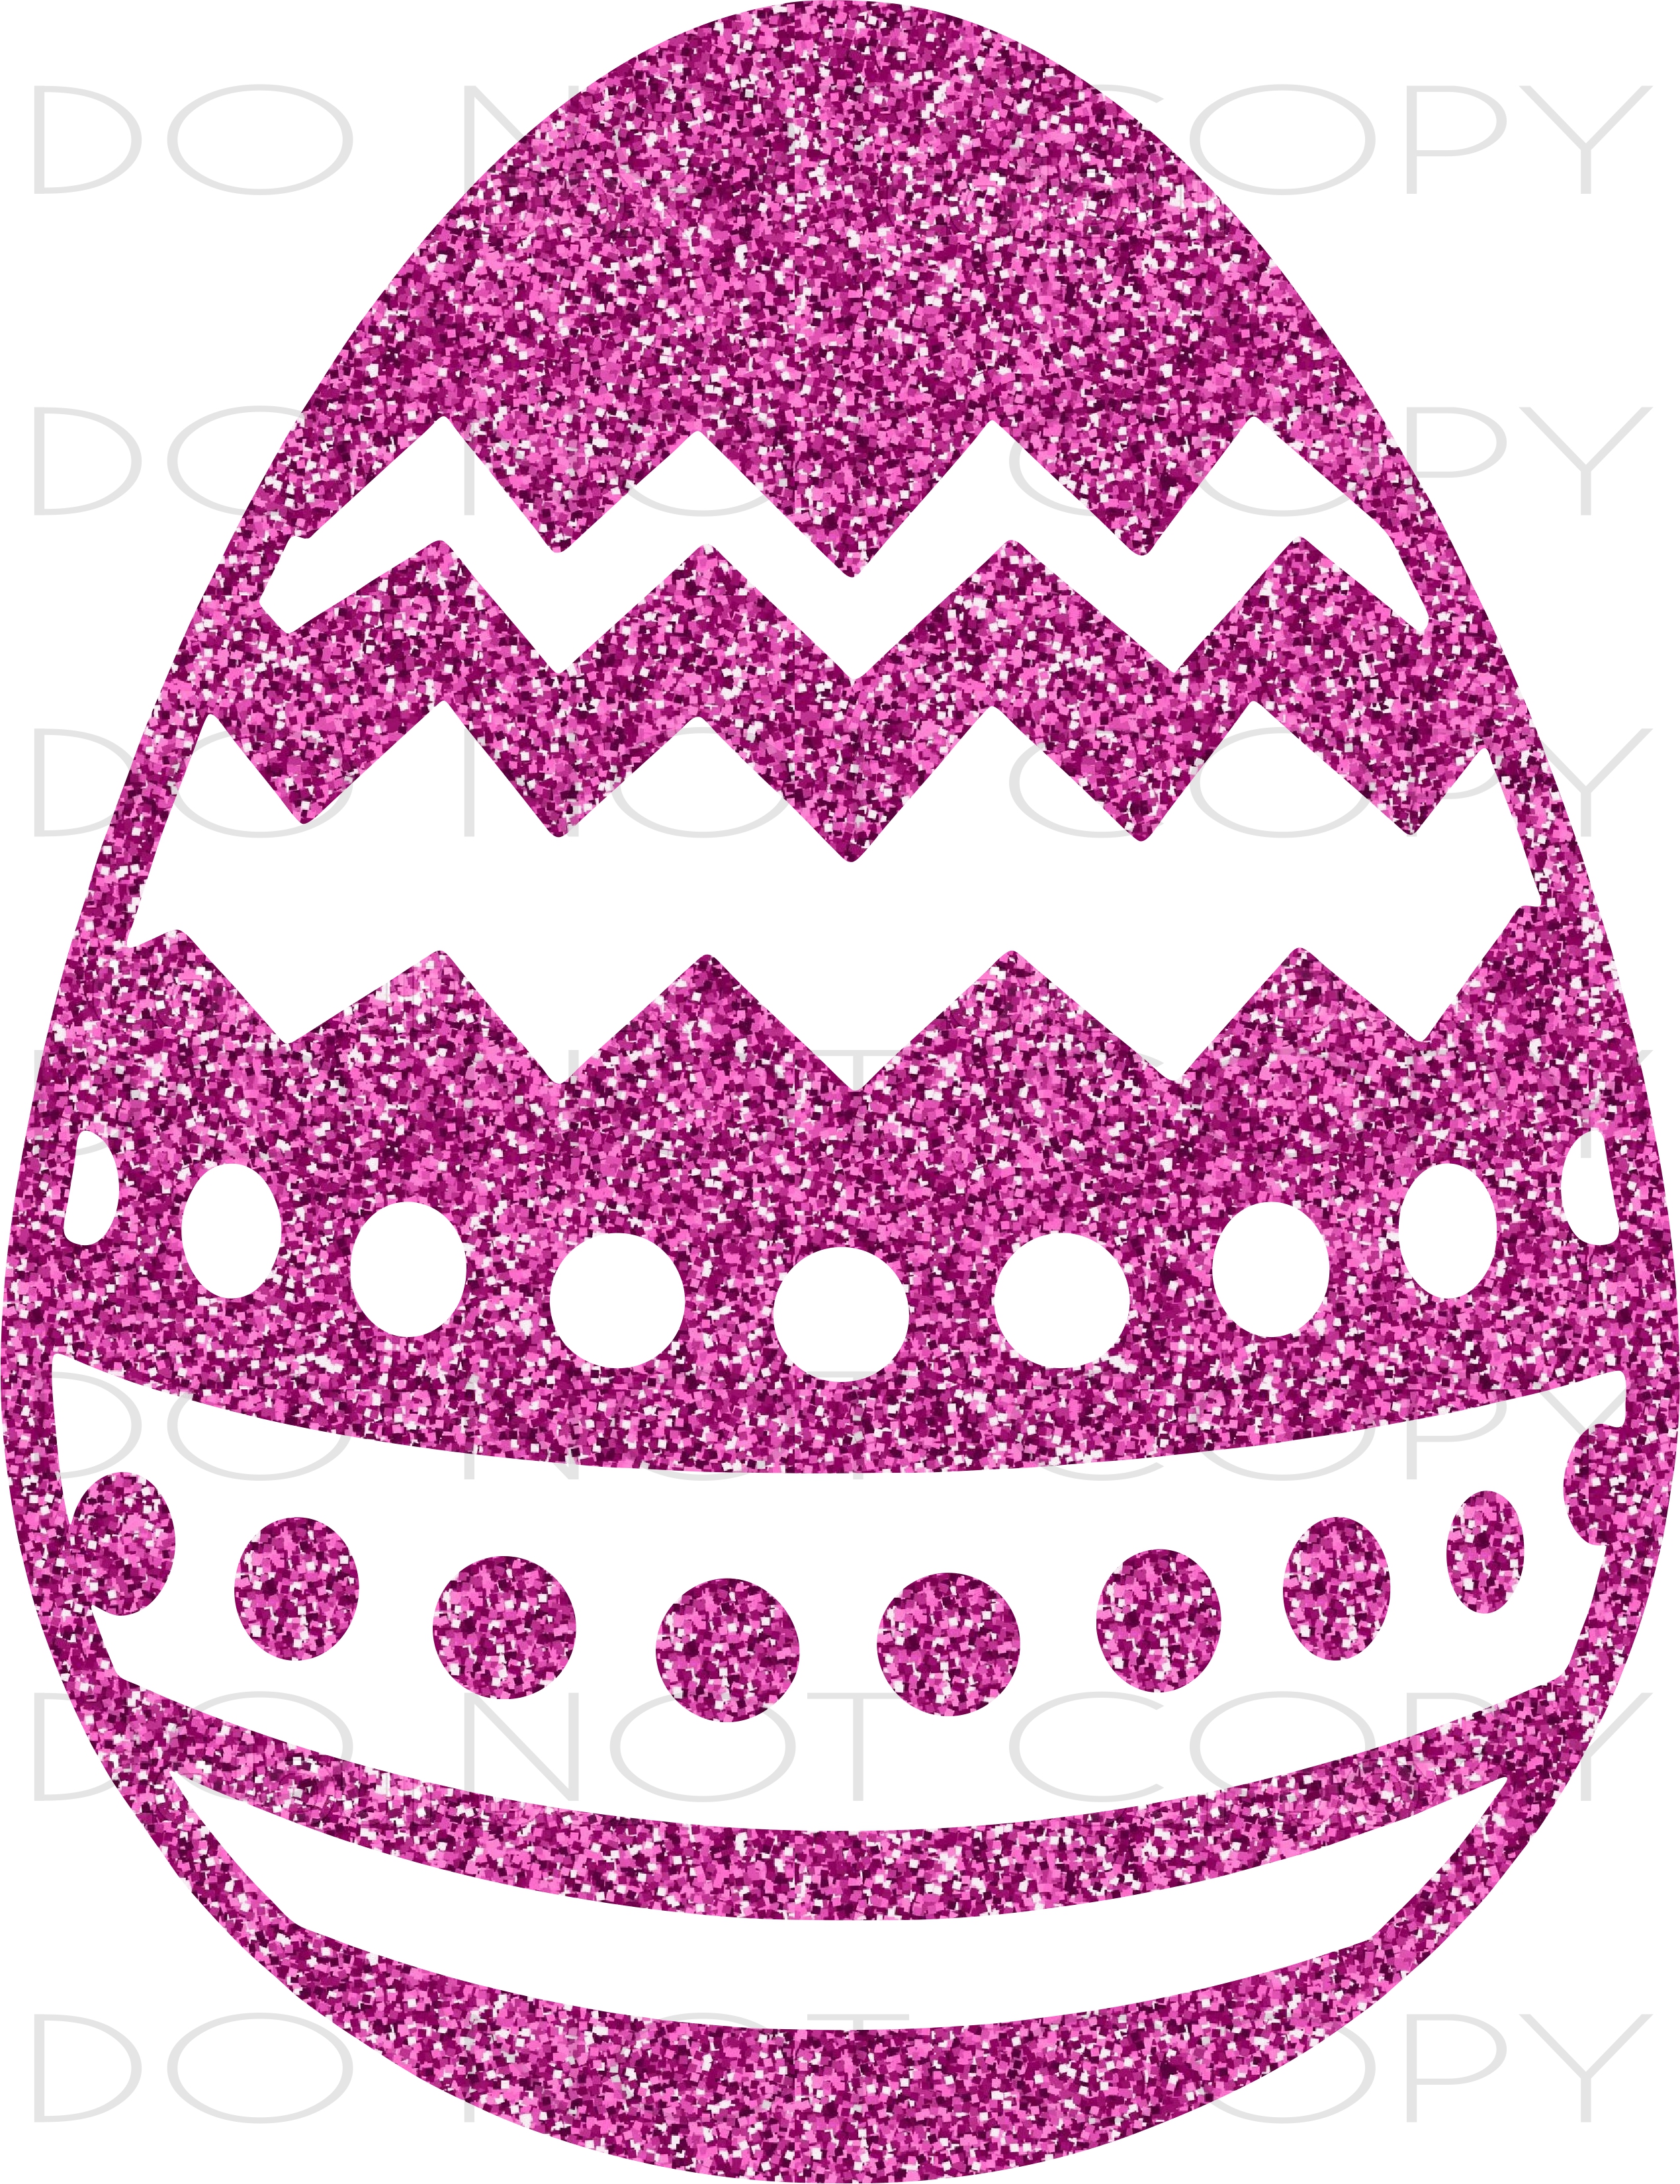 Easter Egg Cut & Print SVG PNG instant digital download at Sewing Divine